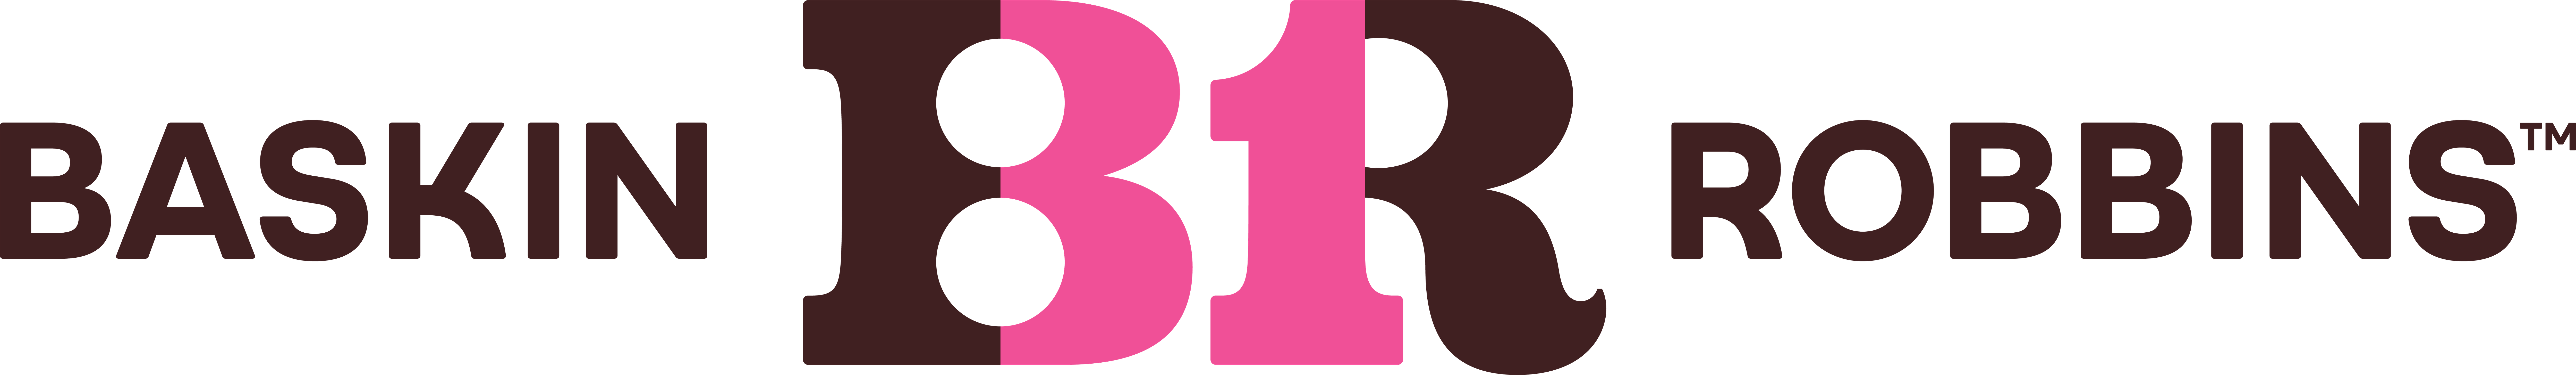 Baskin Robbin's Logo